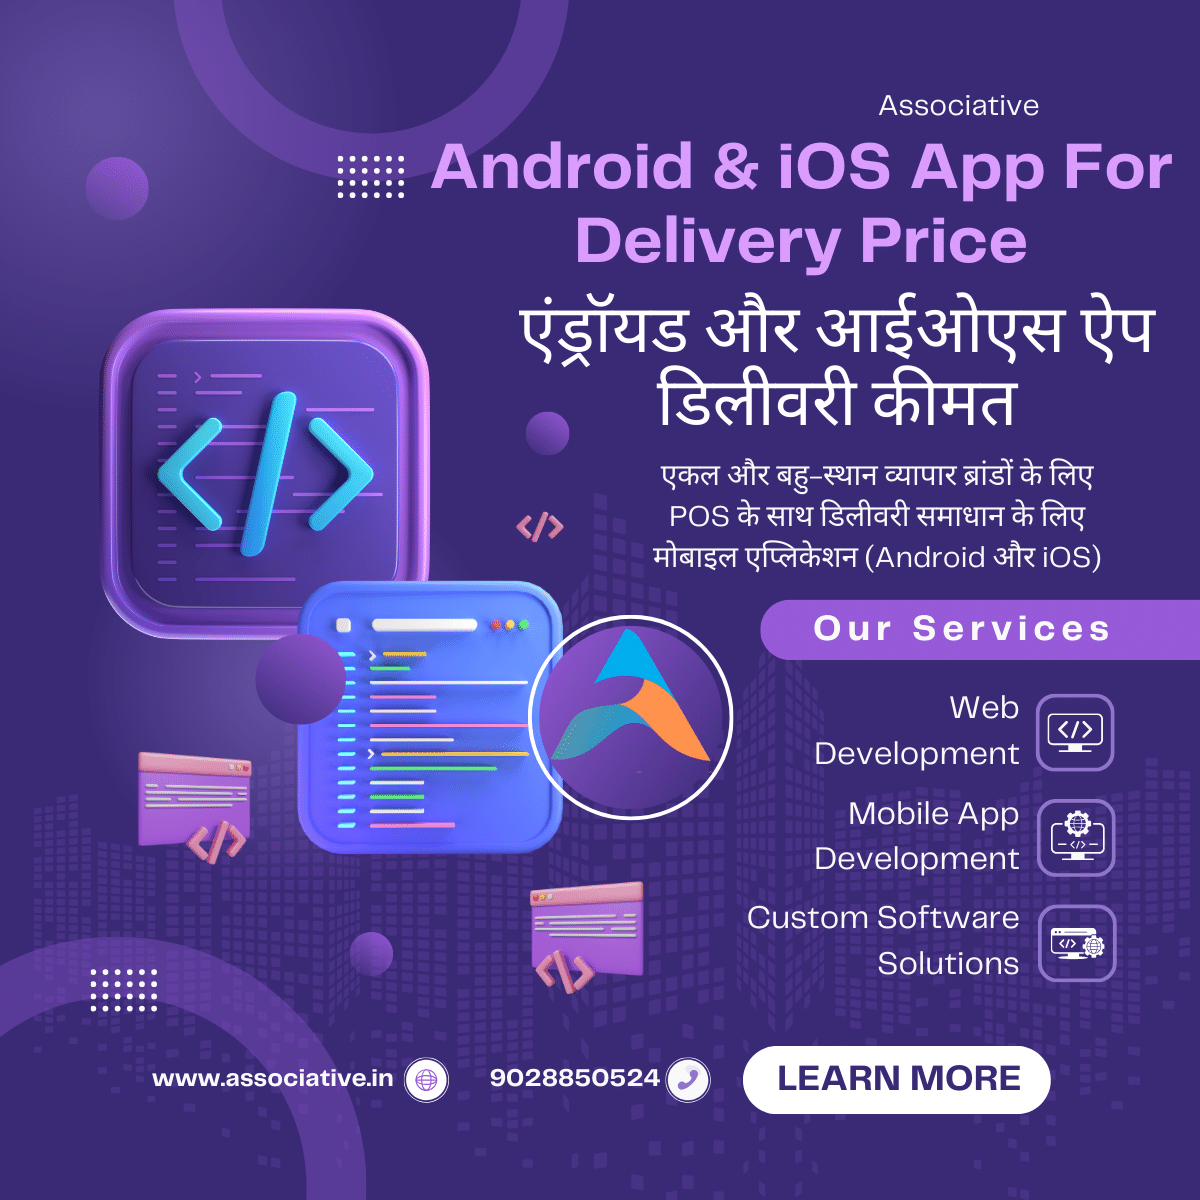 Android & iOS App For - Delivery Price

एंड्रॉयड और आईओएस ऐप डिलीवरी कीमत